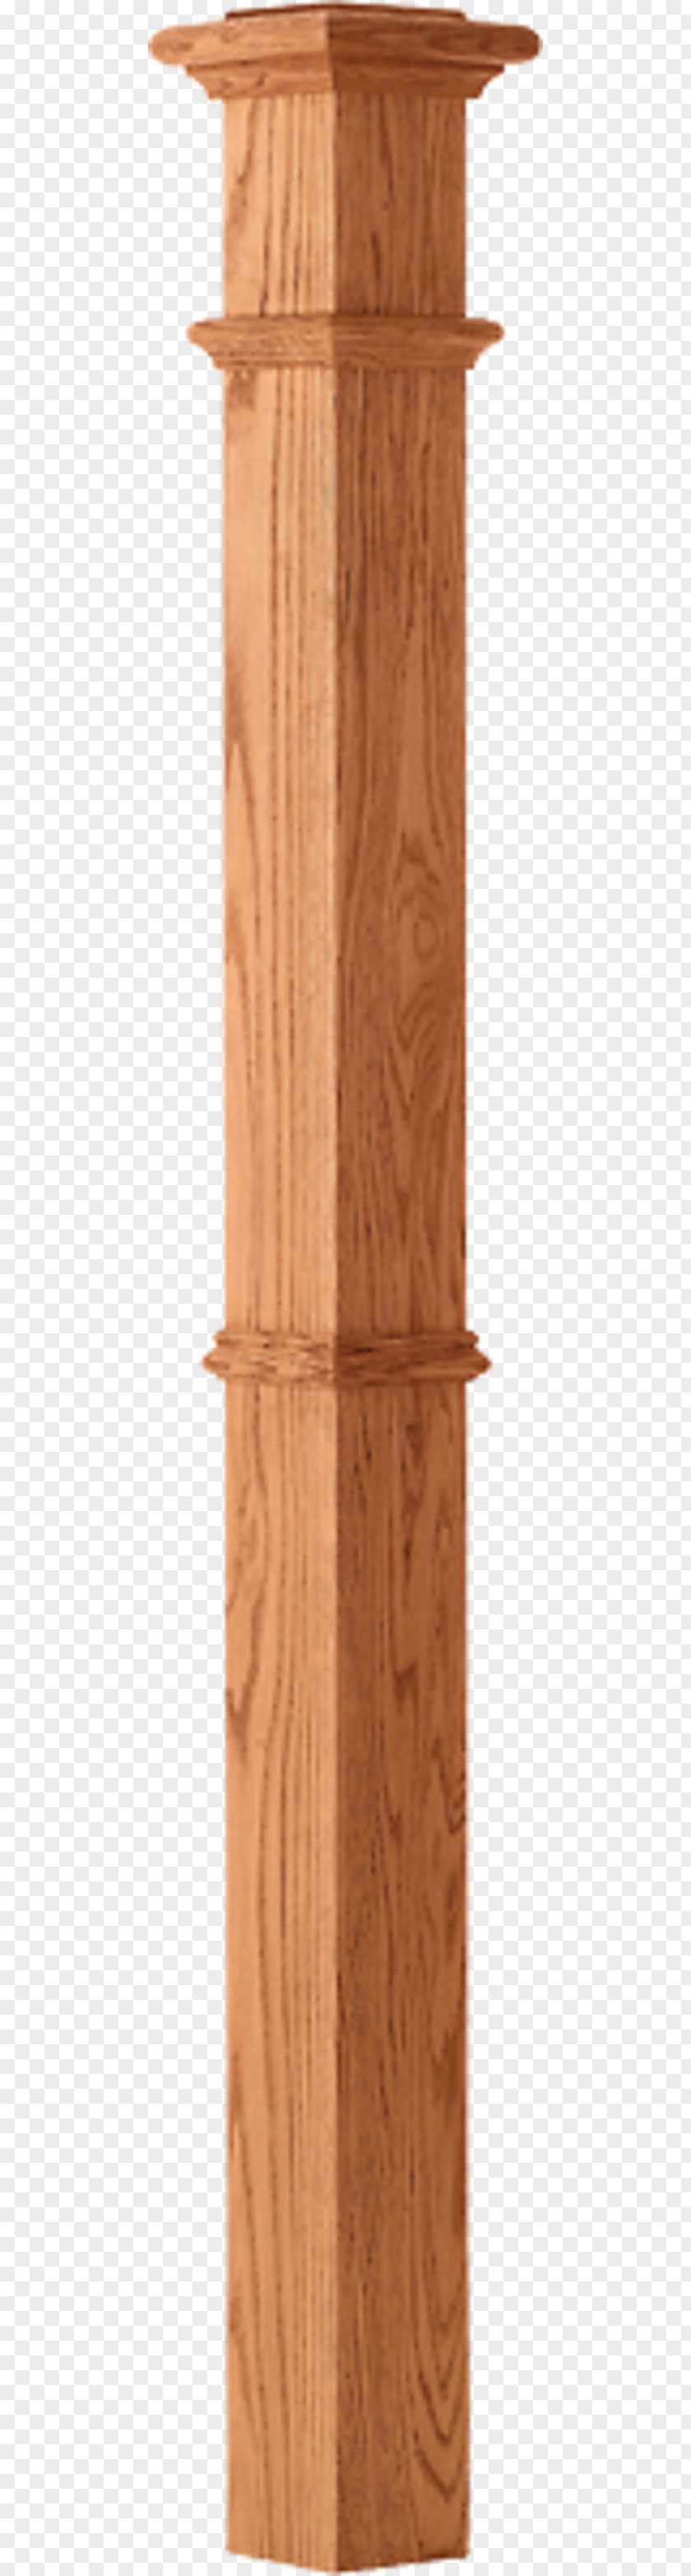 Baluster Wood Stain Hardwood Varnish Angle PNG